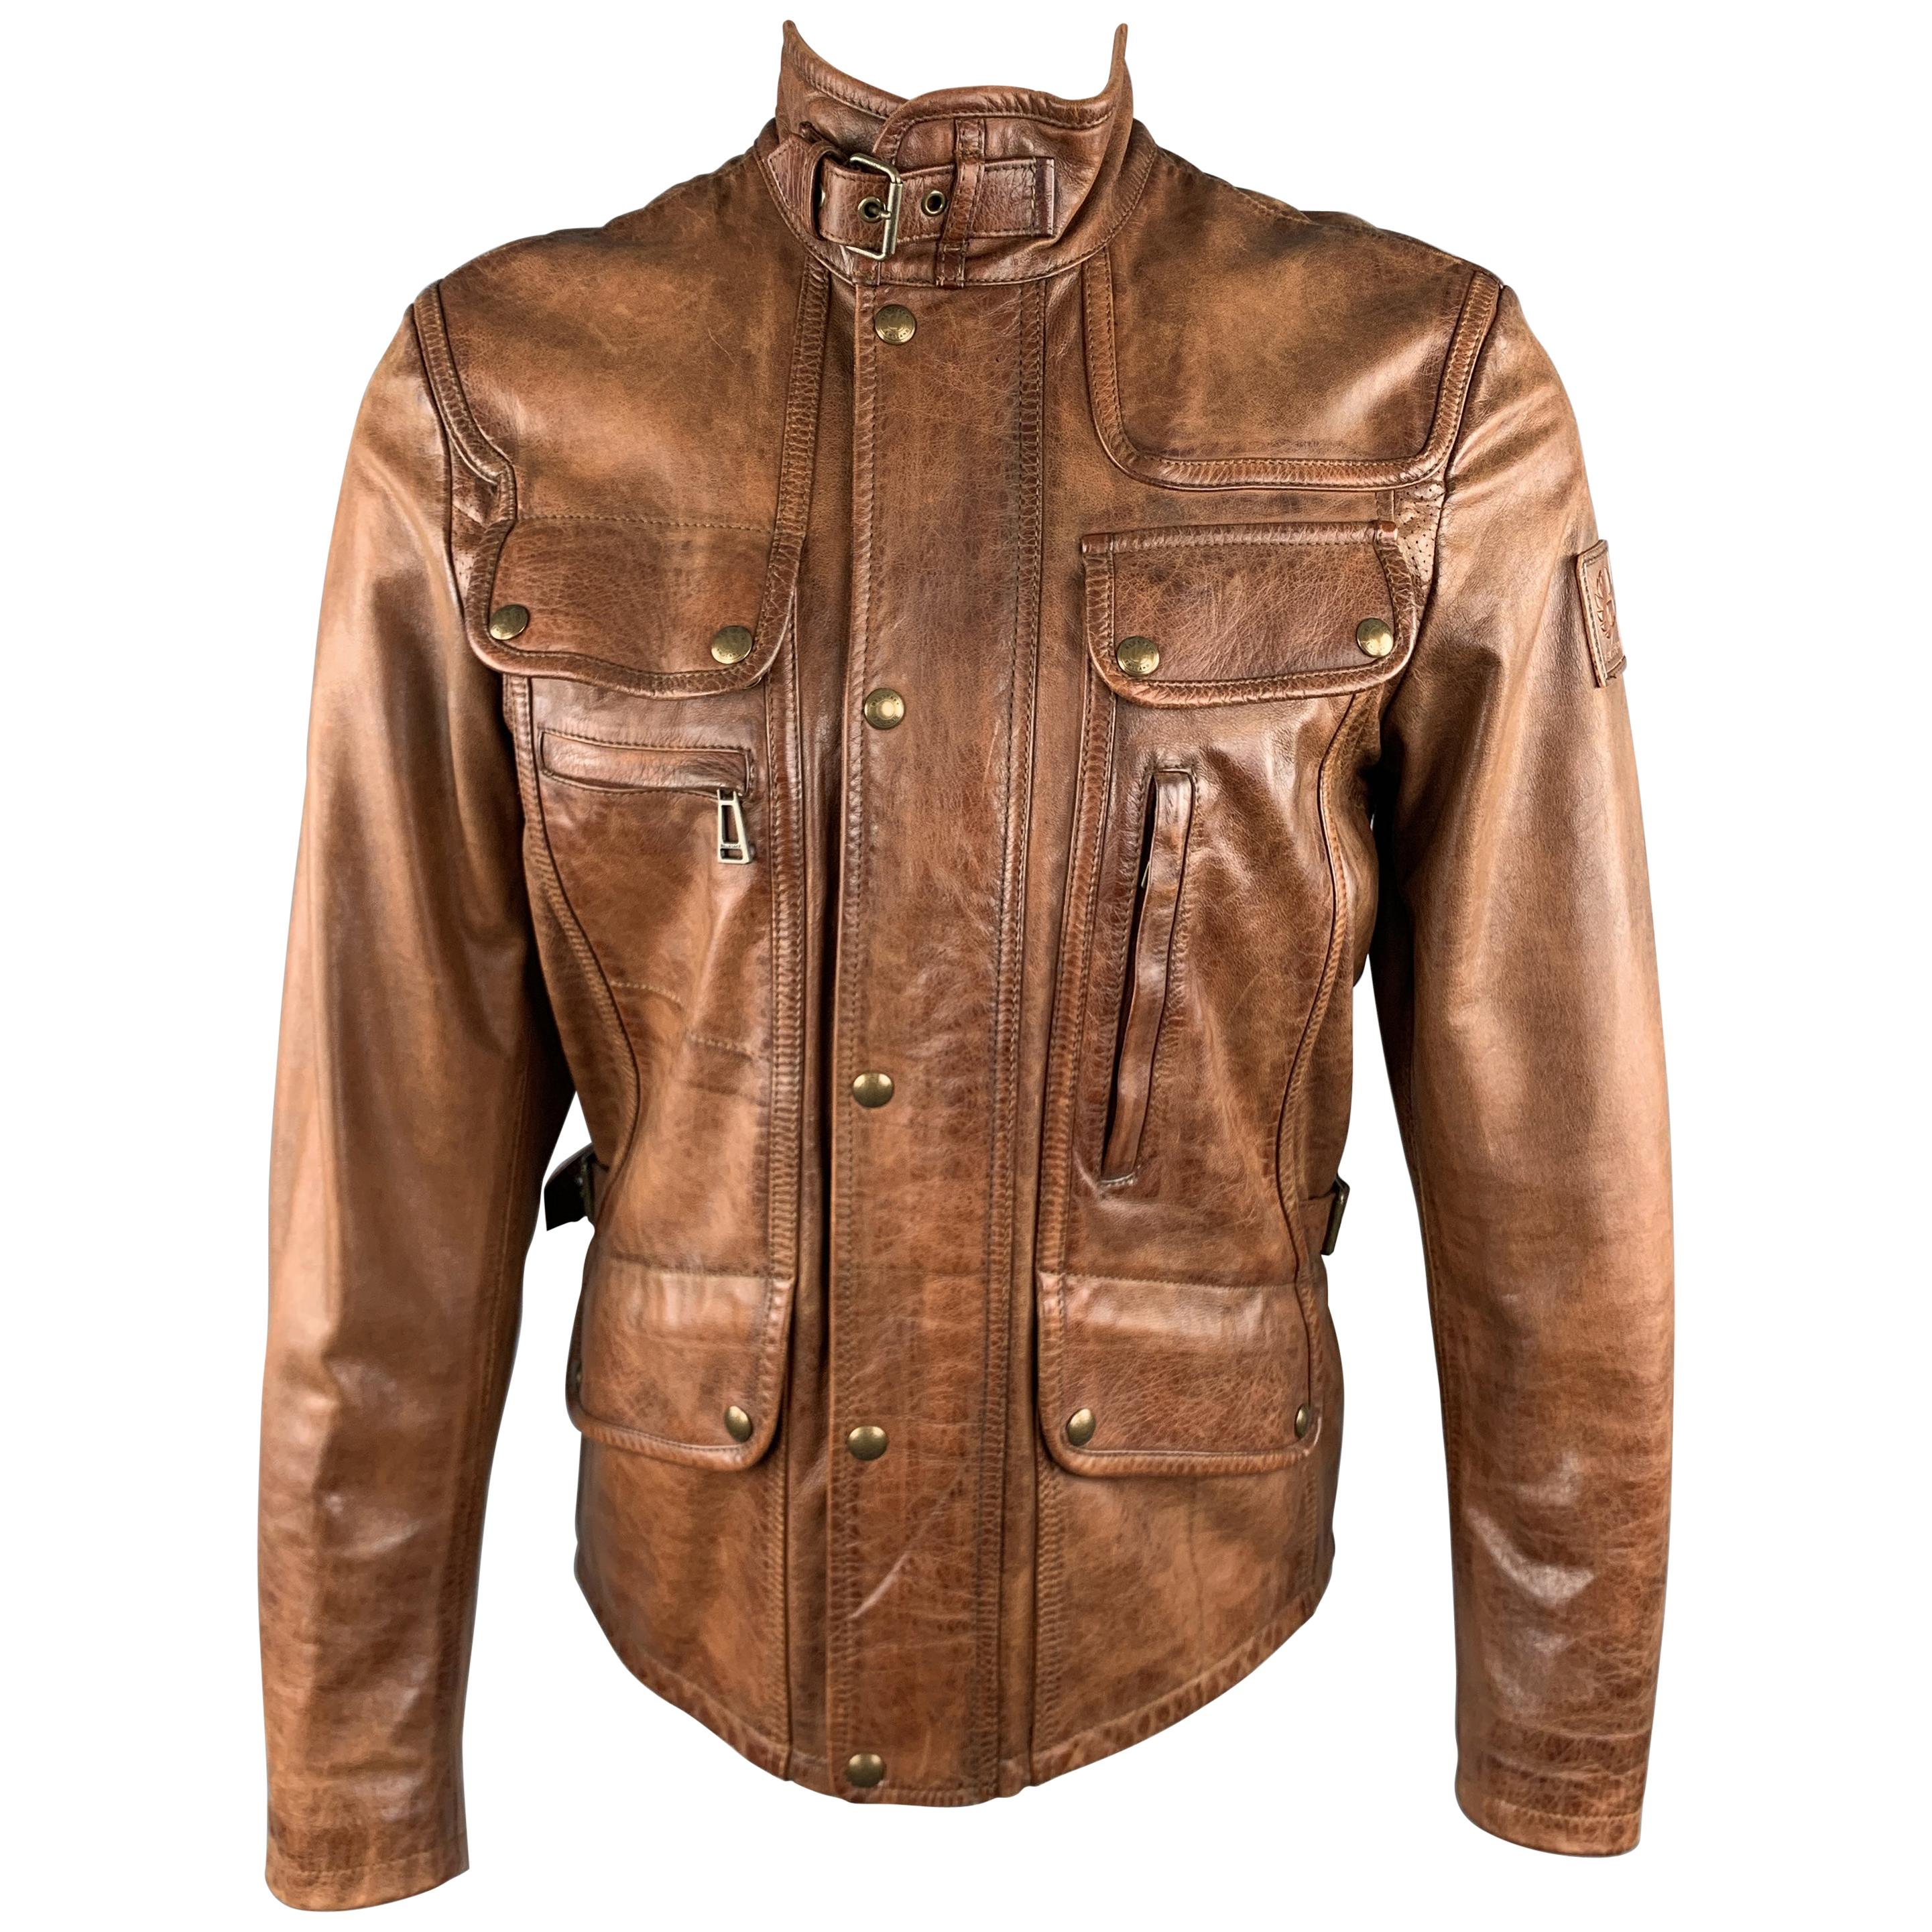 Belstaff Leather Jacket - 4 For Sale on 1stDibs